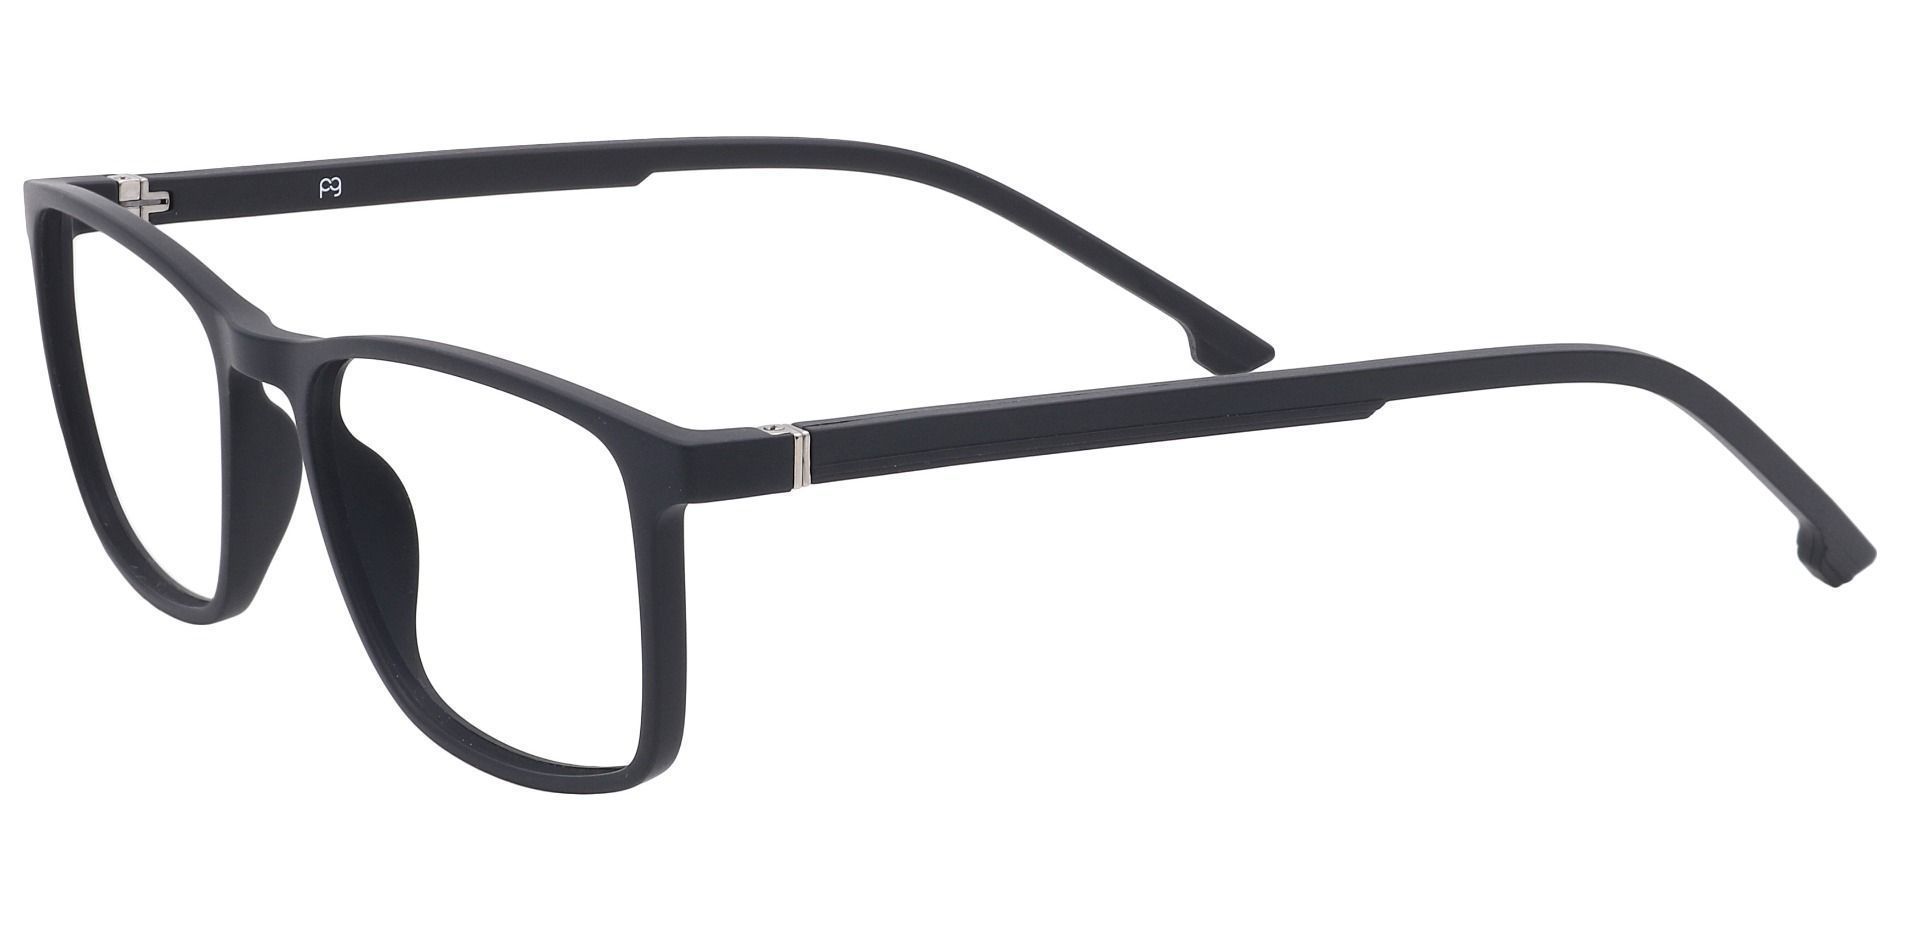 Franklin Rectangle Eyeglasses Frame -   Matte Black  